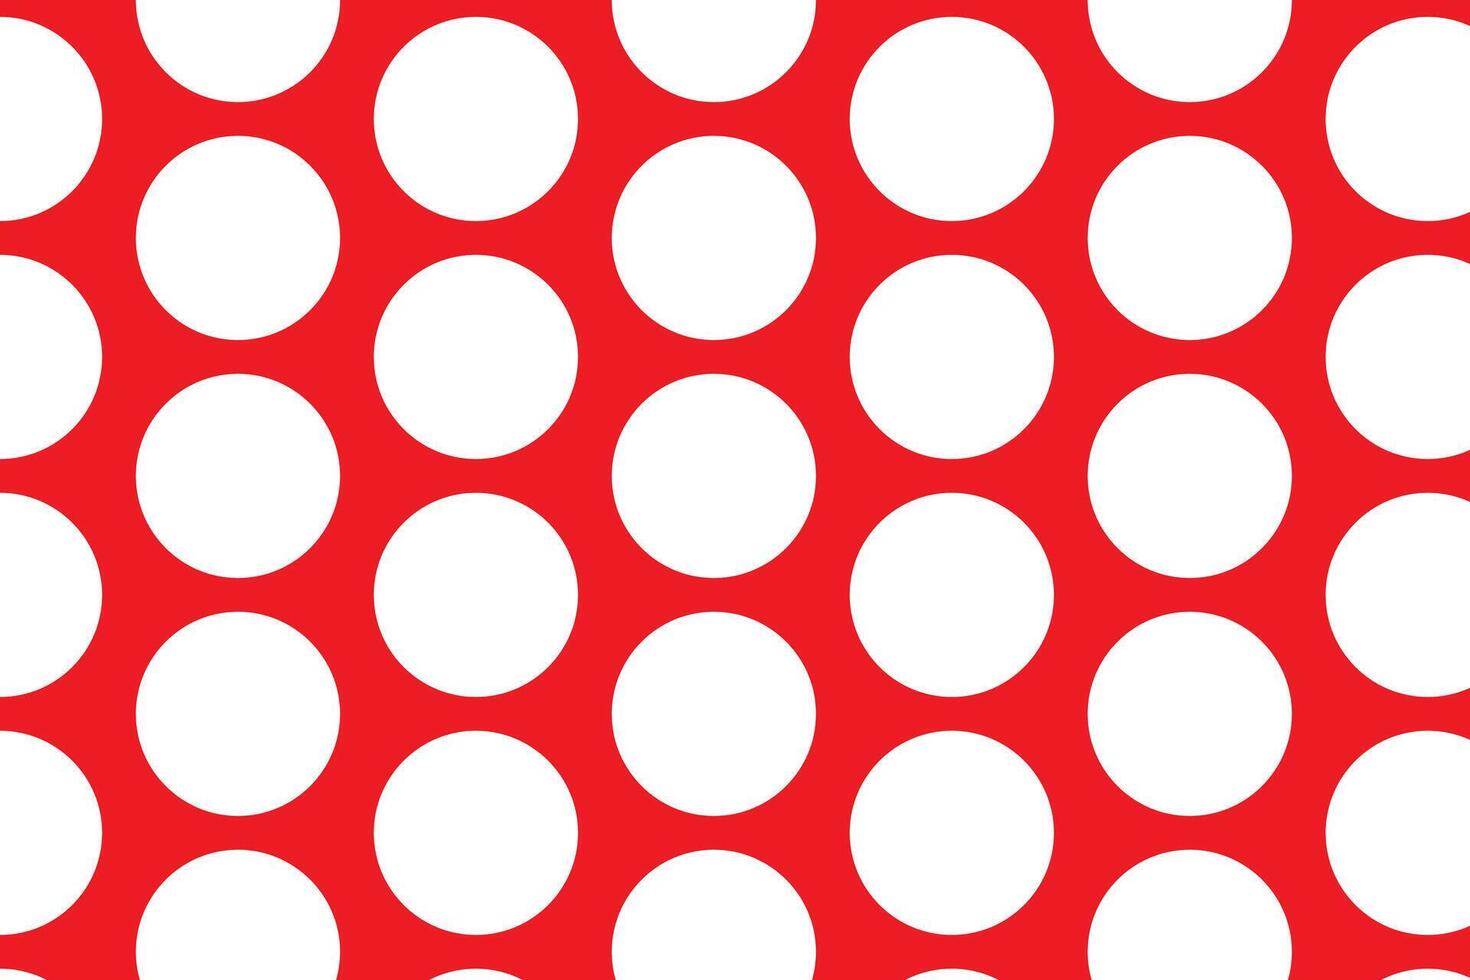 en röd och vit mönster med vit stjärnor på den en röd bakgrund med vit prickar och prickar vektor